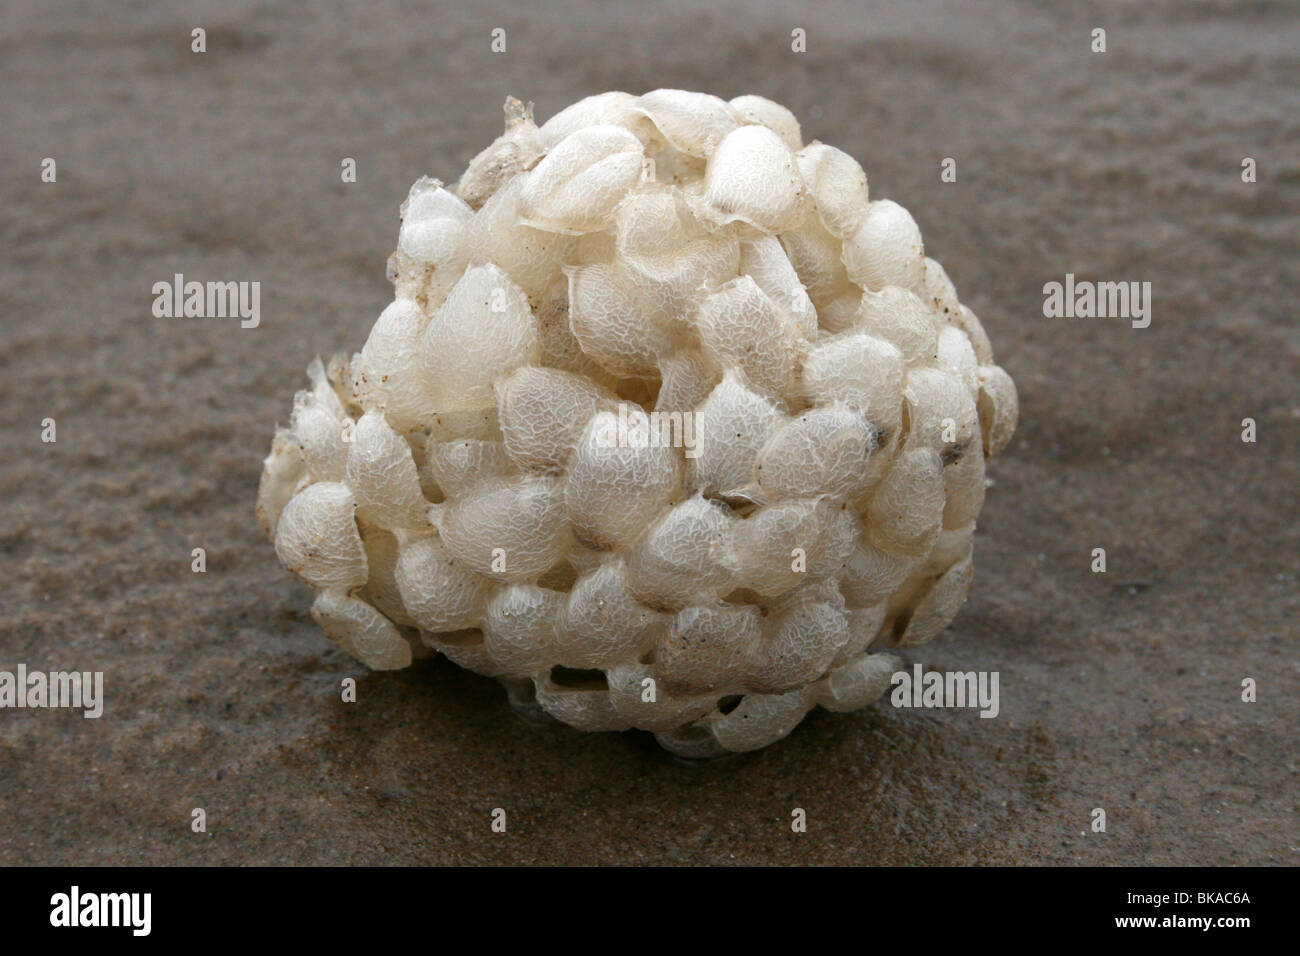 Balle de lavage de la mer, les cas du buccin Buccinum undatum prises à New Brighton, Wallasey, le Wirral, UK Banque D'Images